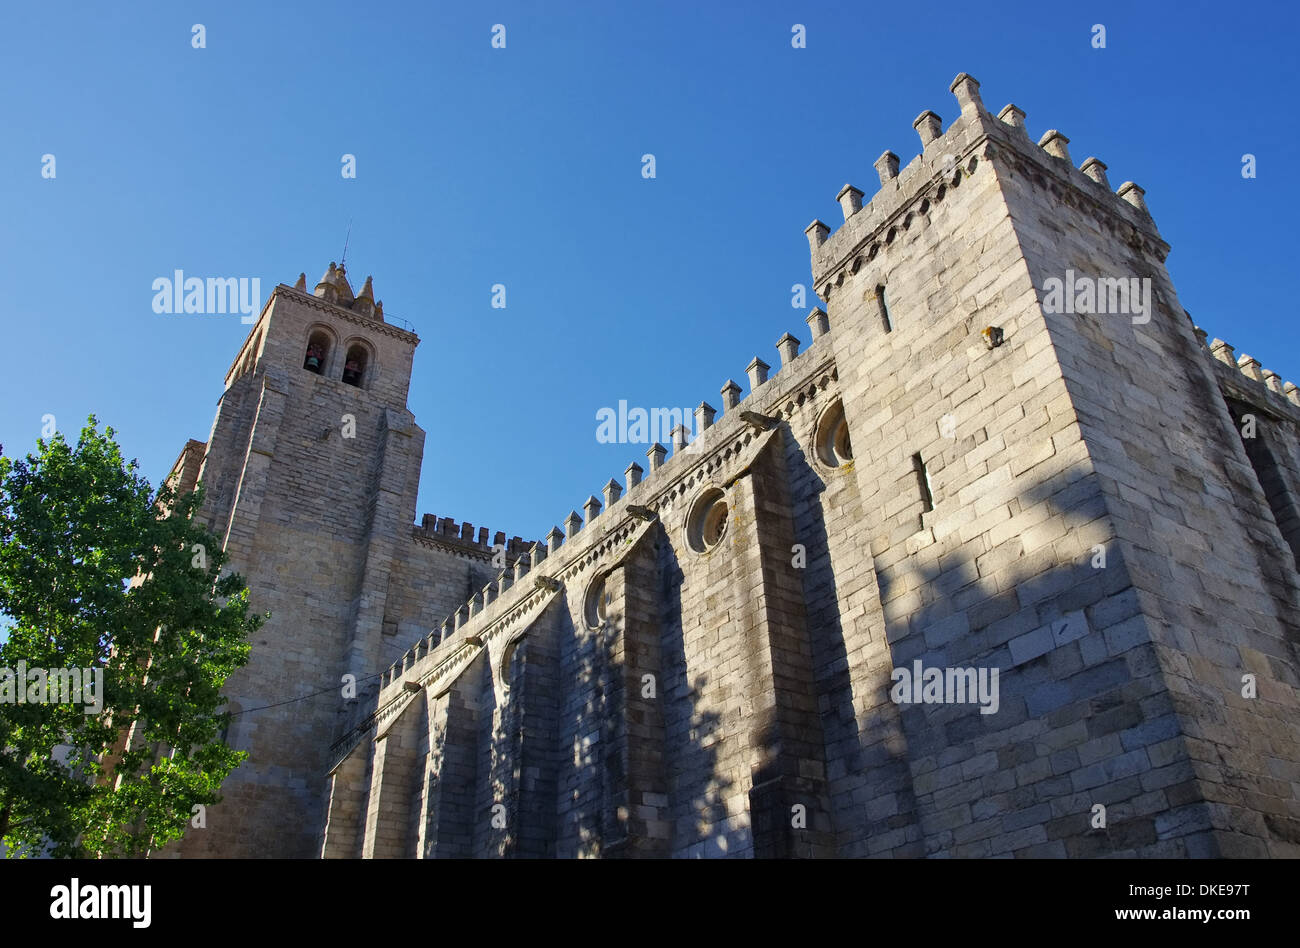 La cathédrale d'Evora Evora Kathedrale - 03 Banque D'Images